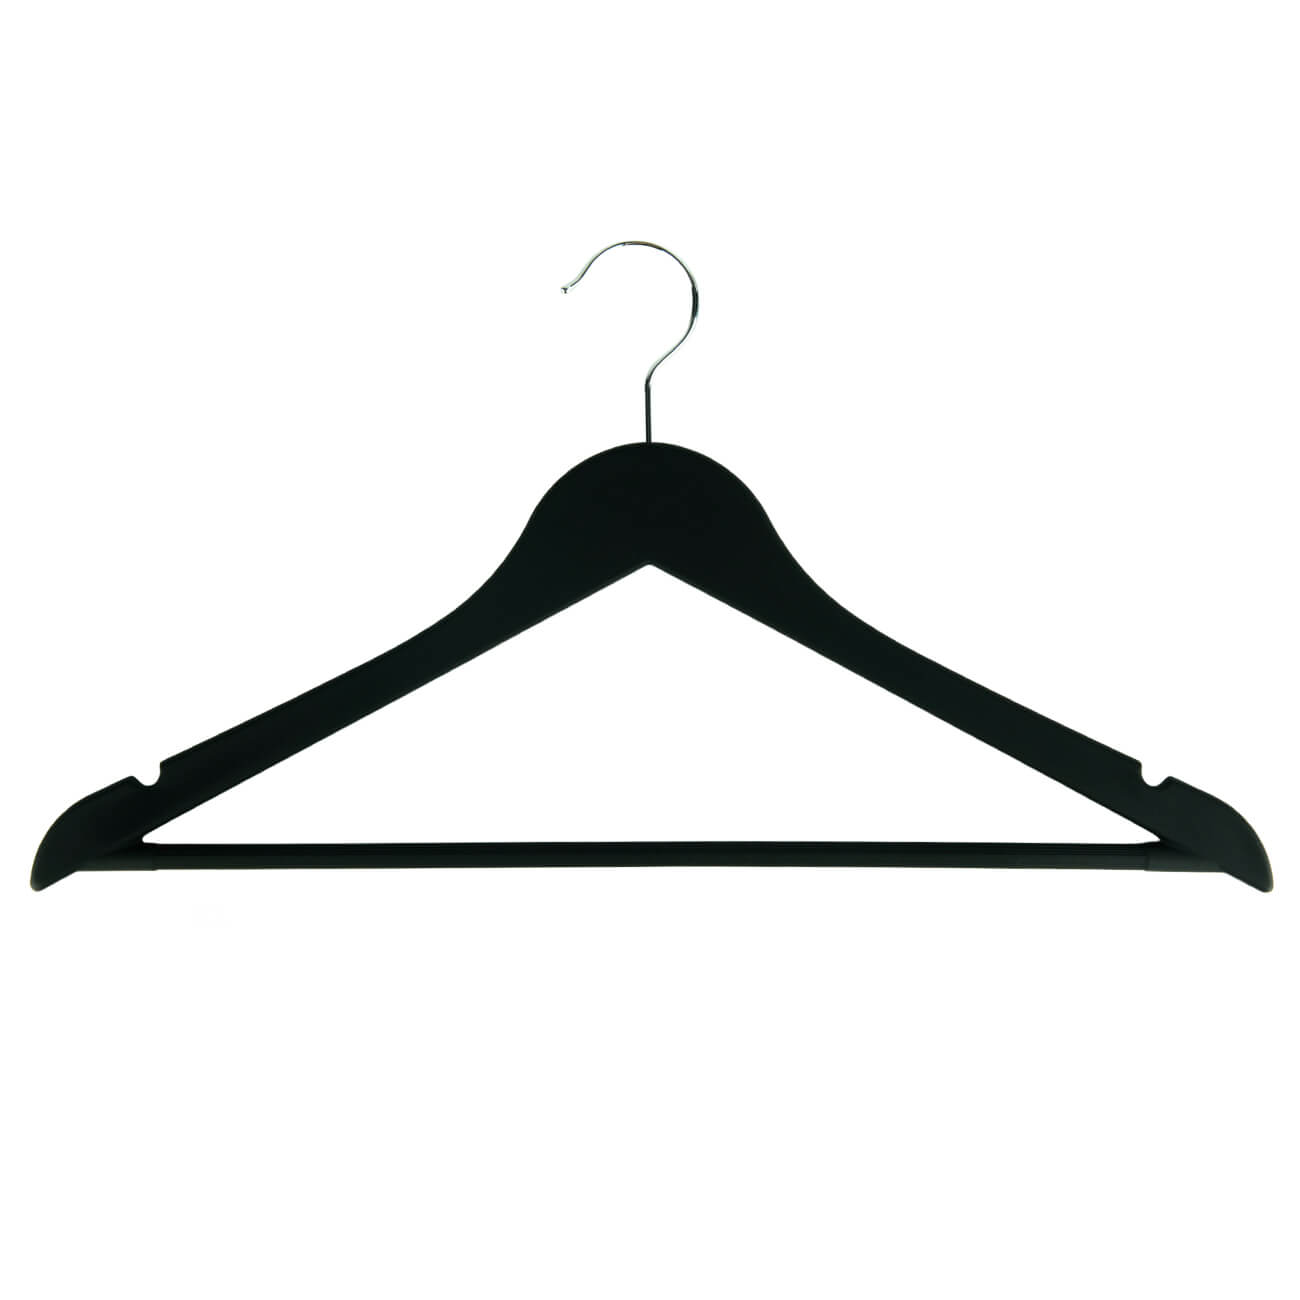 Hanger, 44 cm, 4 pcs, plastic coated, black, Fun house  изображение № 1